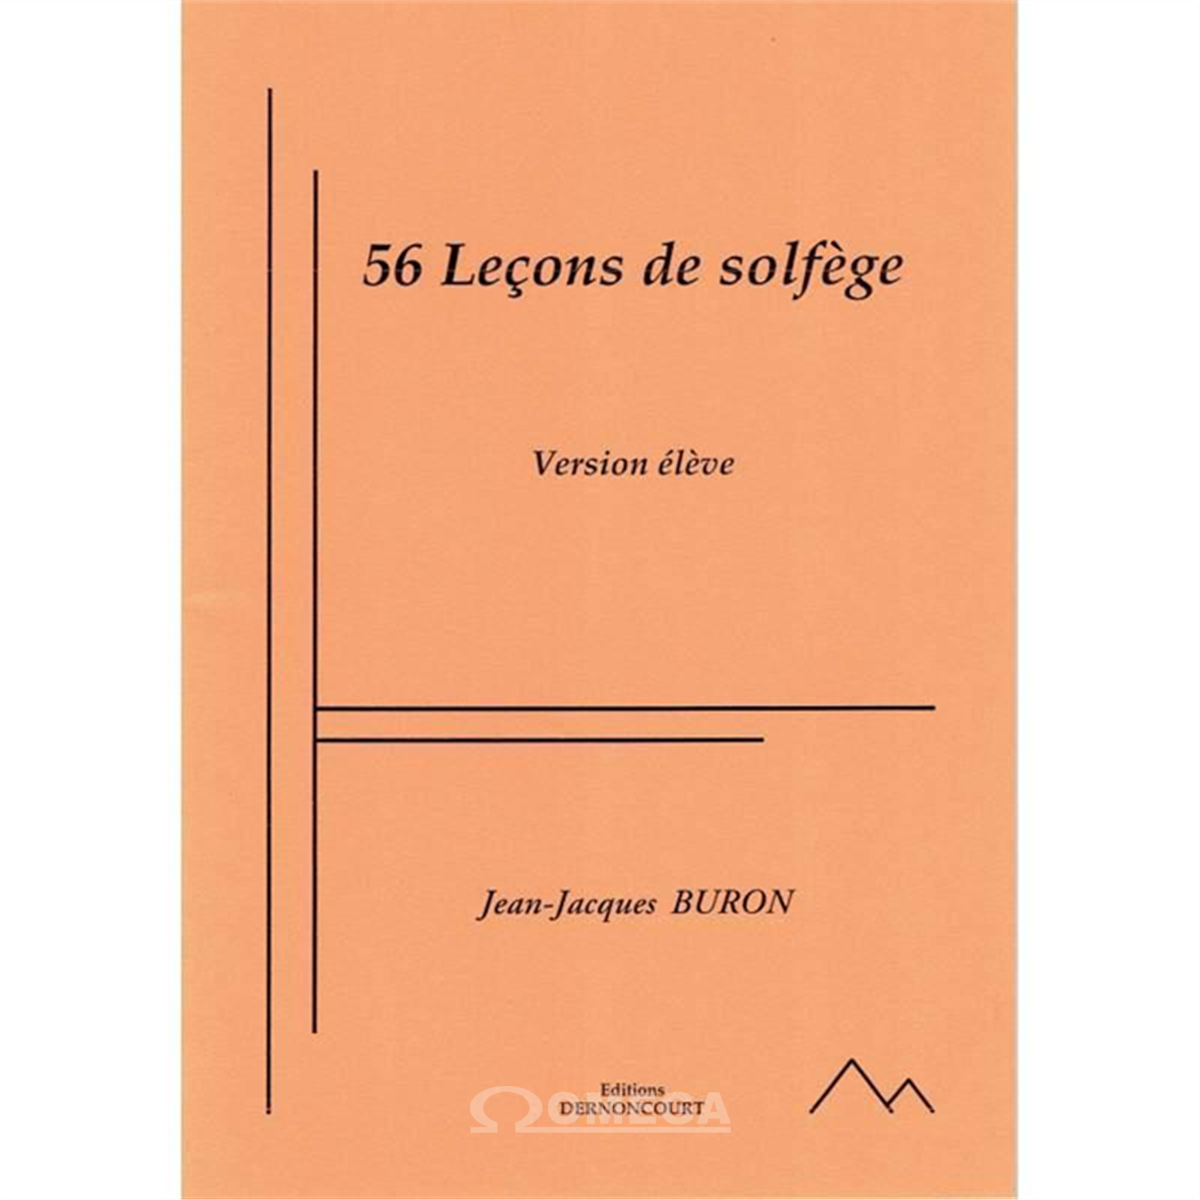 BURON 56 Leçons de Solfège Ed. Dernoncourt